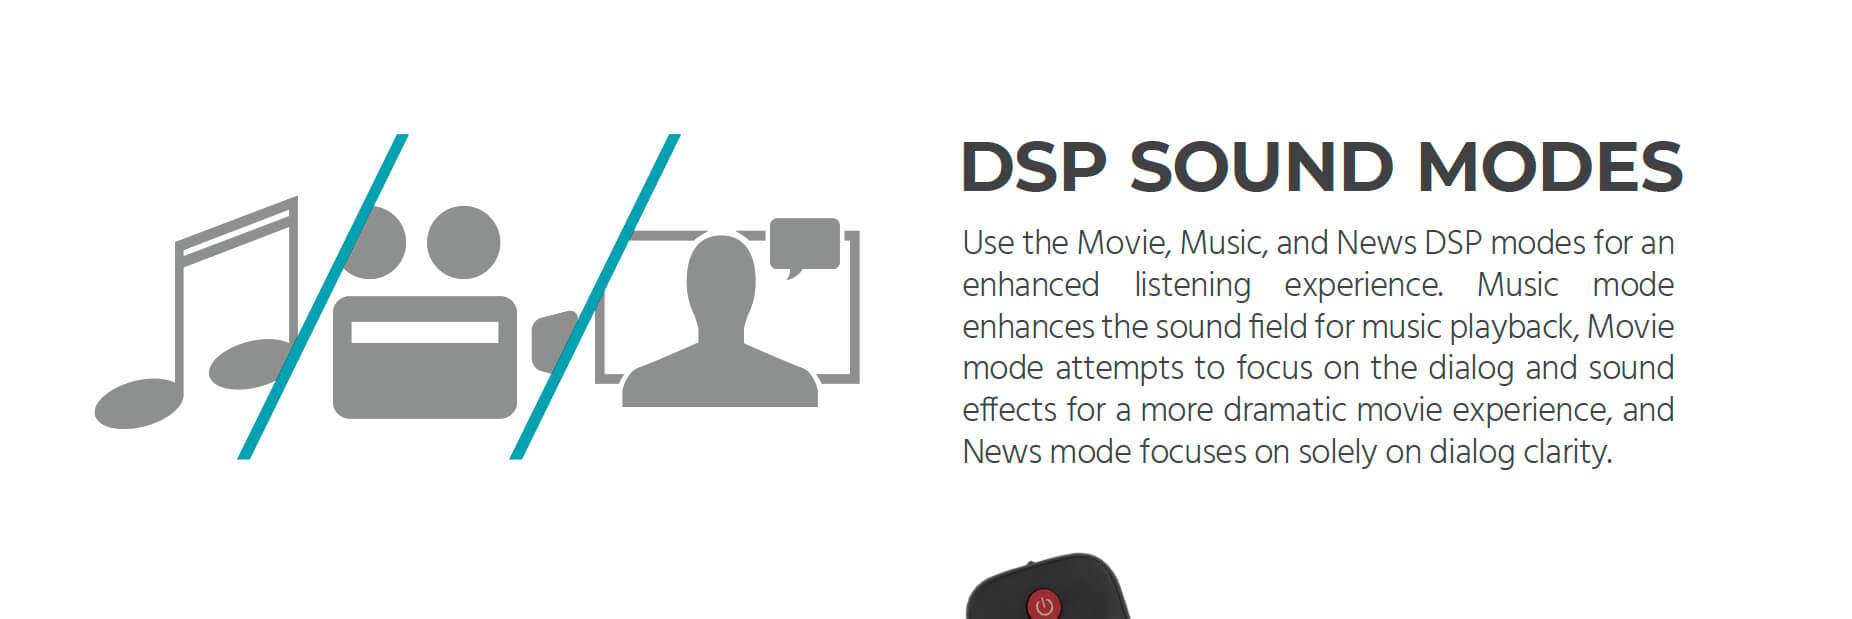 Monoprice acerca el sonido Dolby Atmos a la gama baja con el kit SB-600 que  viene con barra de sonido, subwoofer y altavoces satélite